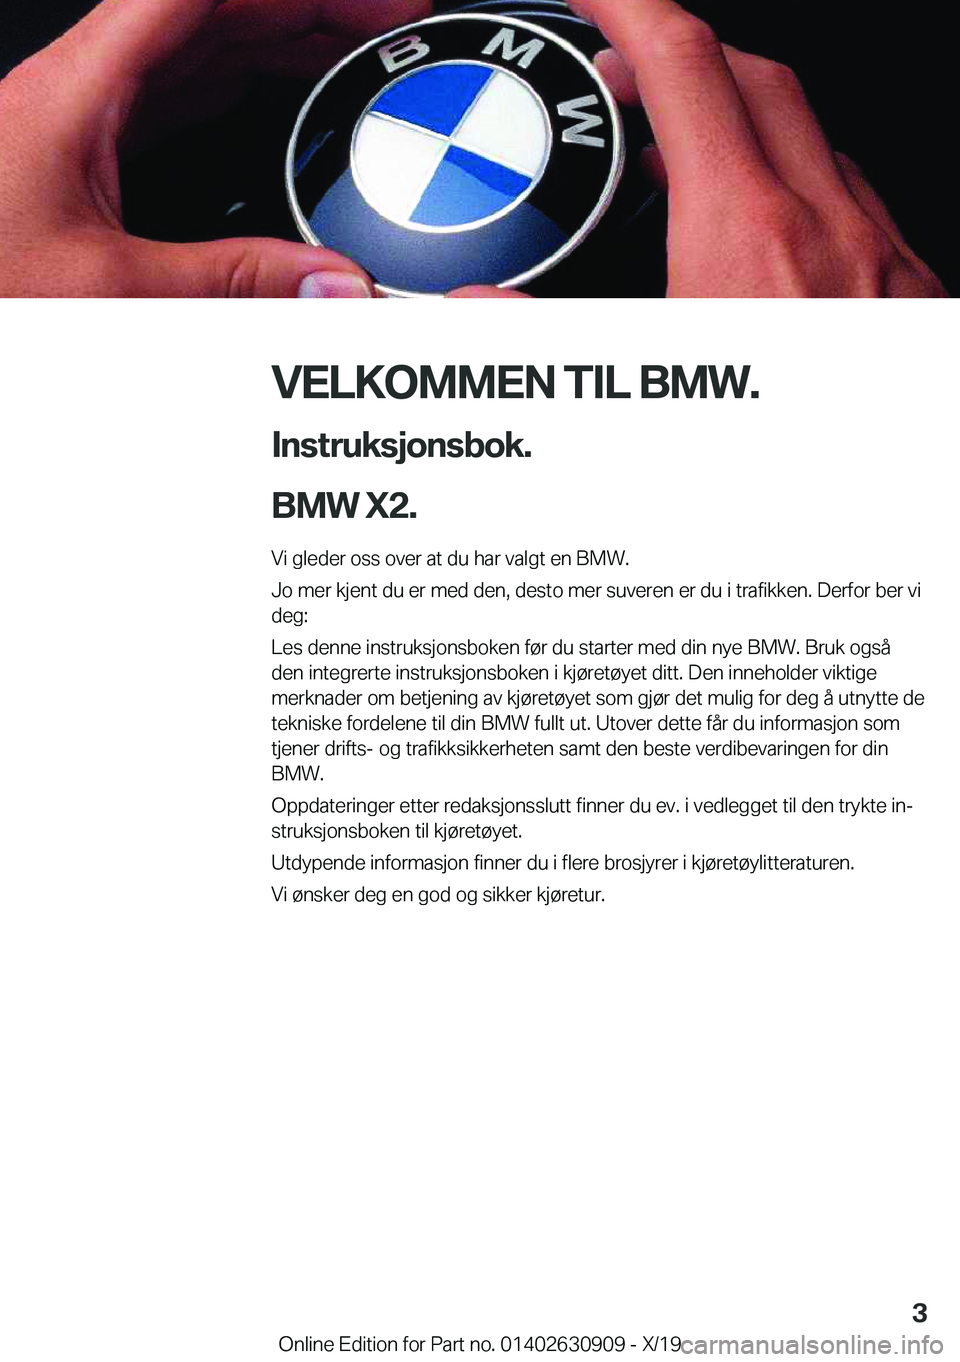 BMW X2 2020  InstruksjonsbØker (in Norwegian) �V�E�L�K�O�M�M�E�N��T�I�L��B�M�W�.�I�n�s�t�r�u�k�s�j�o�n�s�b�o�k�.
�B�M�W��X�2�.
�V�i��g�l�e�d�e�r��o�s�s��o�v�e�r��a�t��d�u��h�a�r��v�a�l�g�t��e�n��B�M�W�.
�J�o��m�e�r��k�j�e�n�t��d�u�